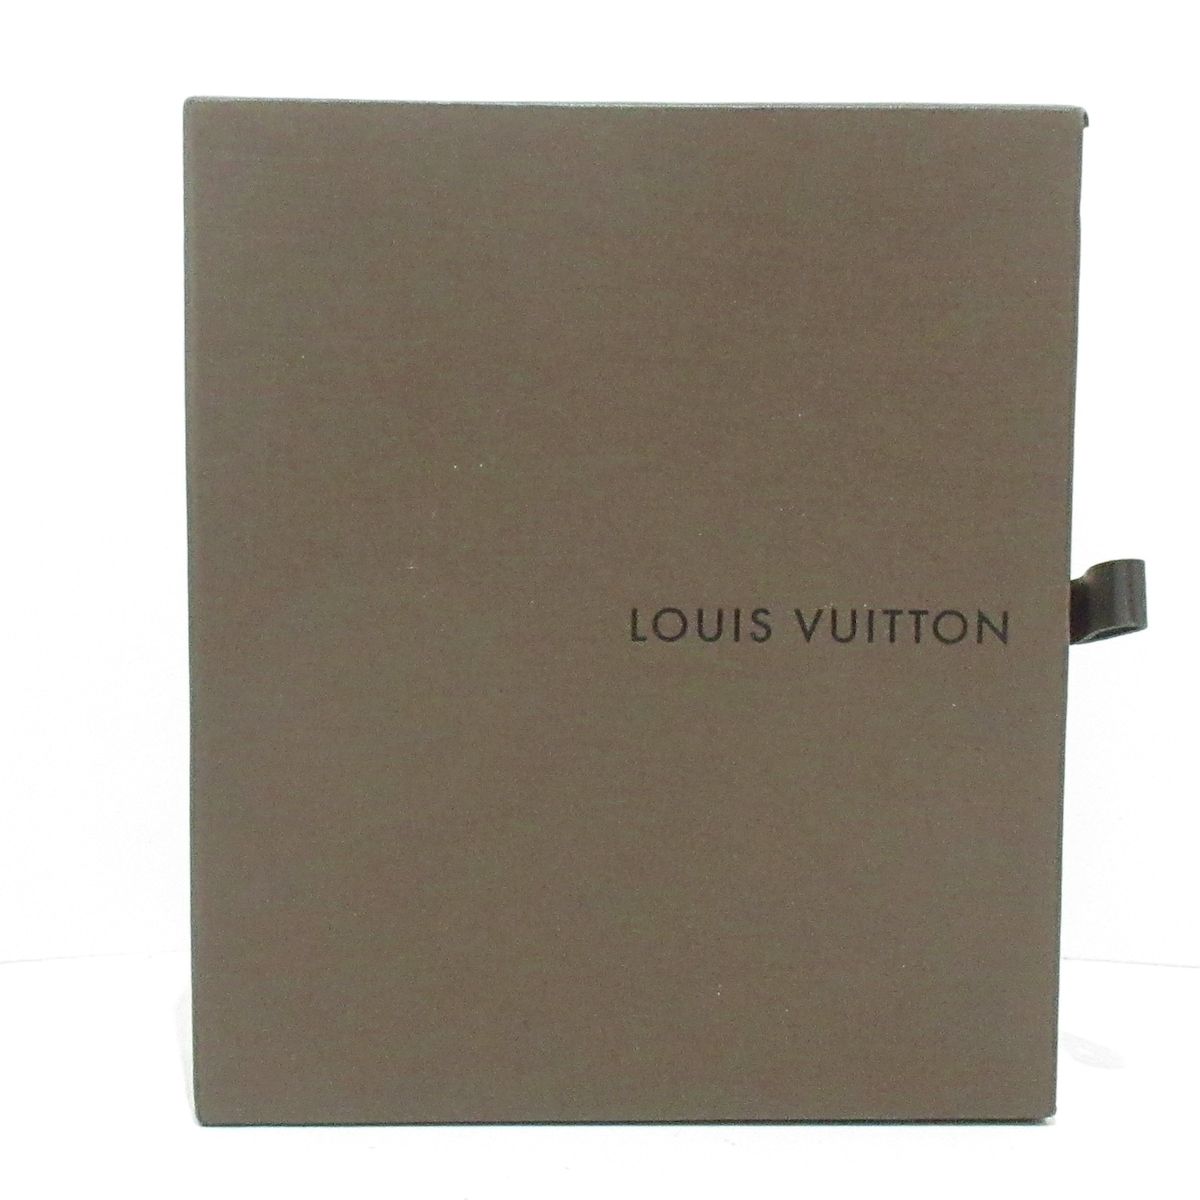 LOUIS VUITTON(ルイヴィトン) シガレットケース モノグラム美品